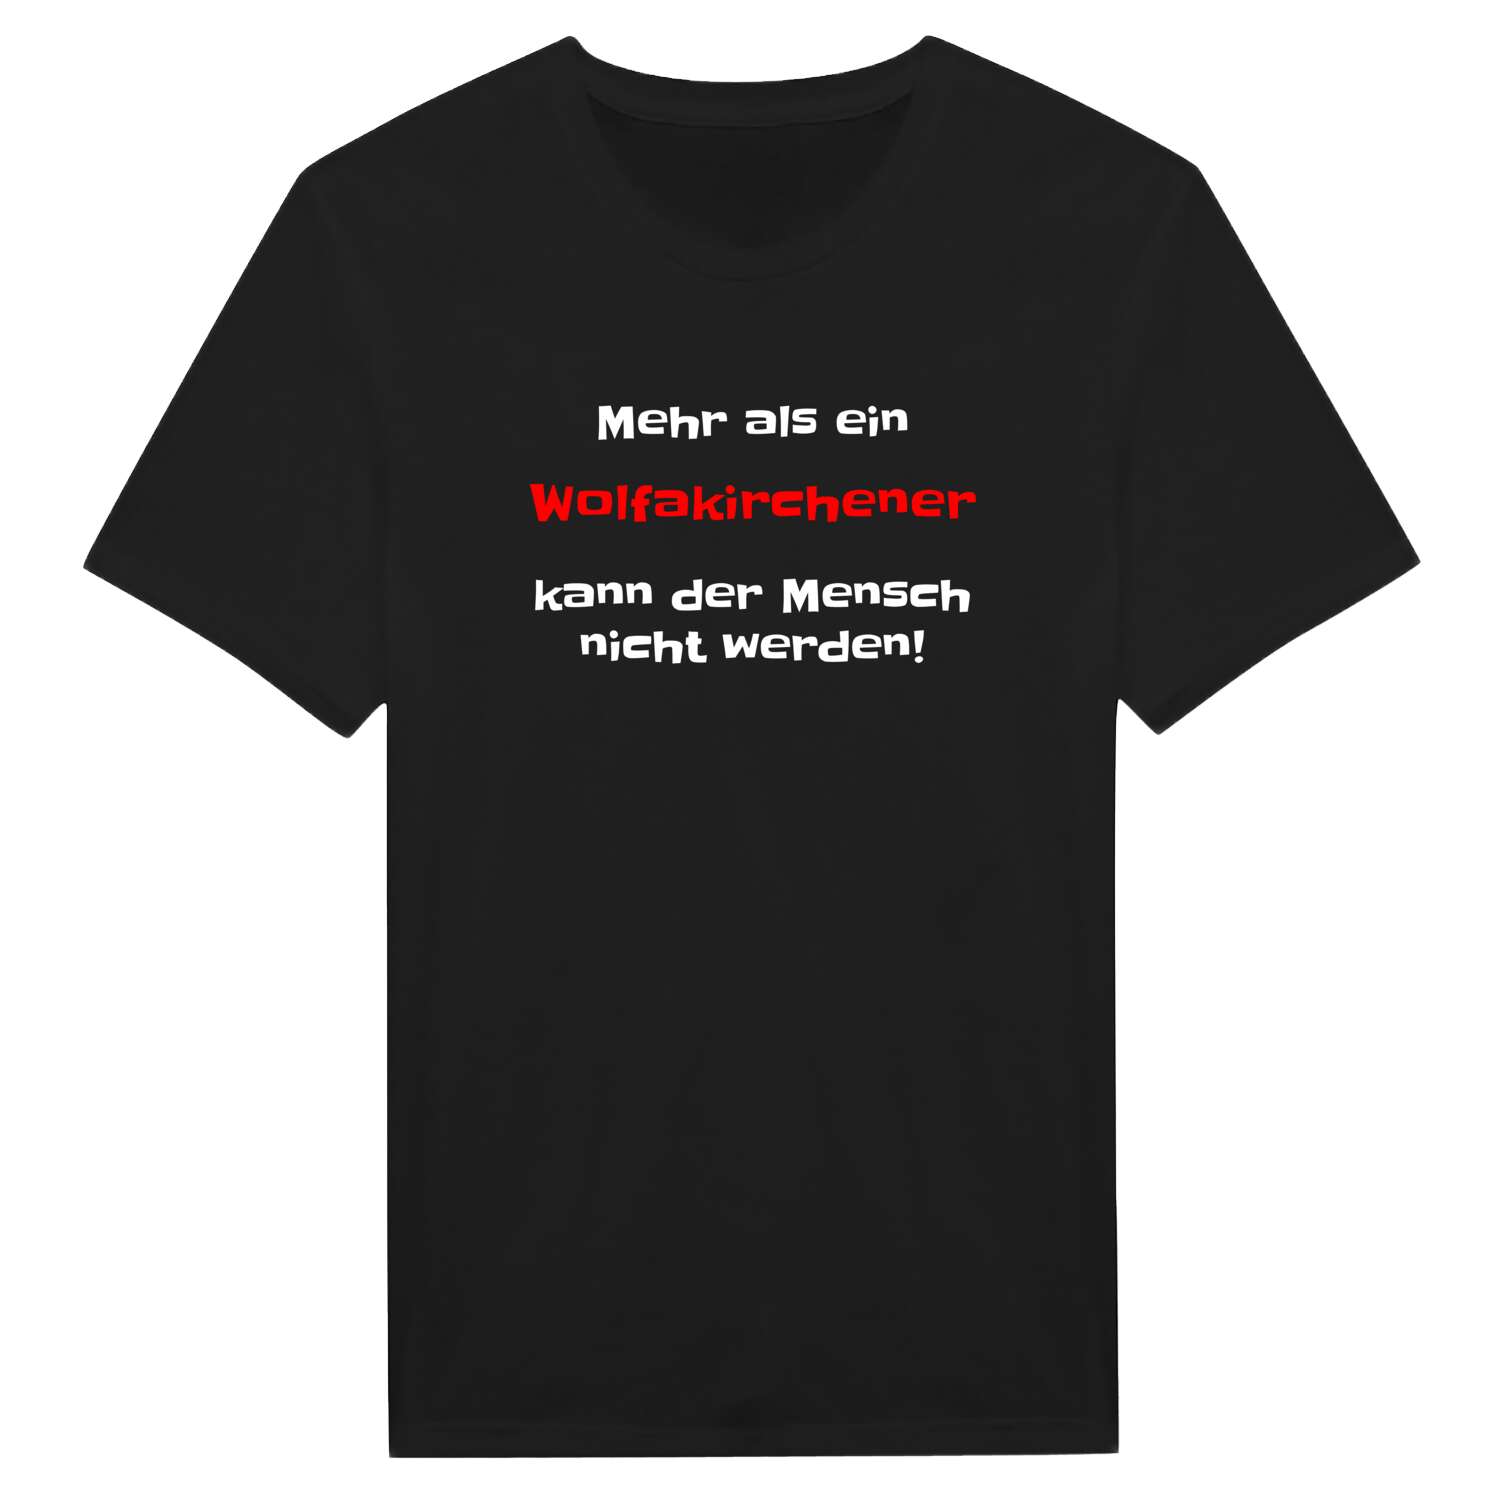 Wolfakirchen T-Shirt »Mehr als ein«